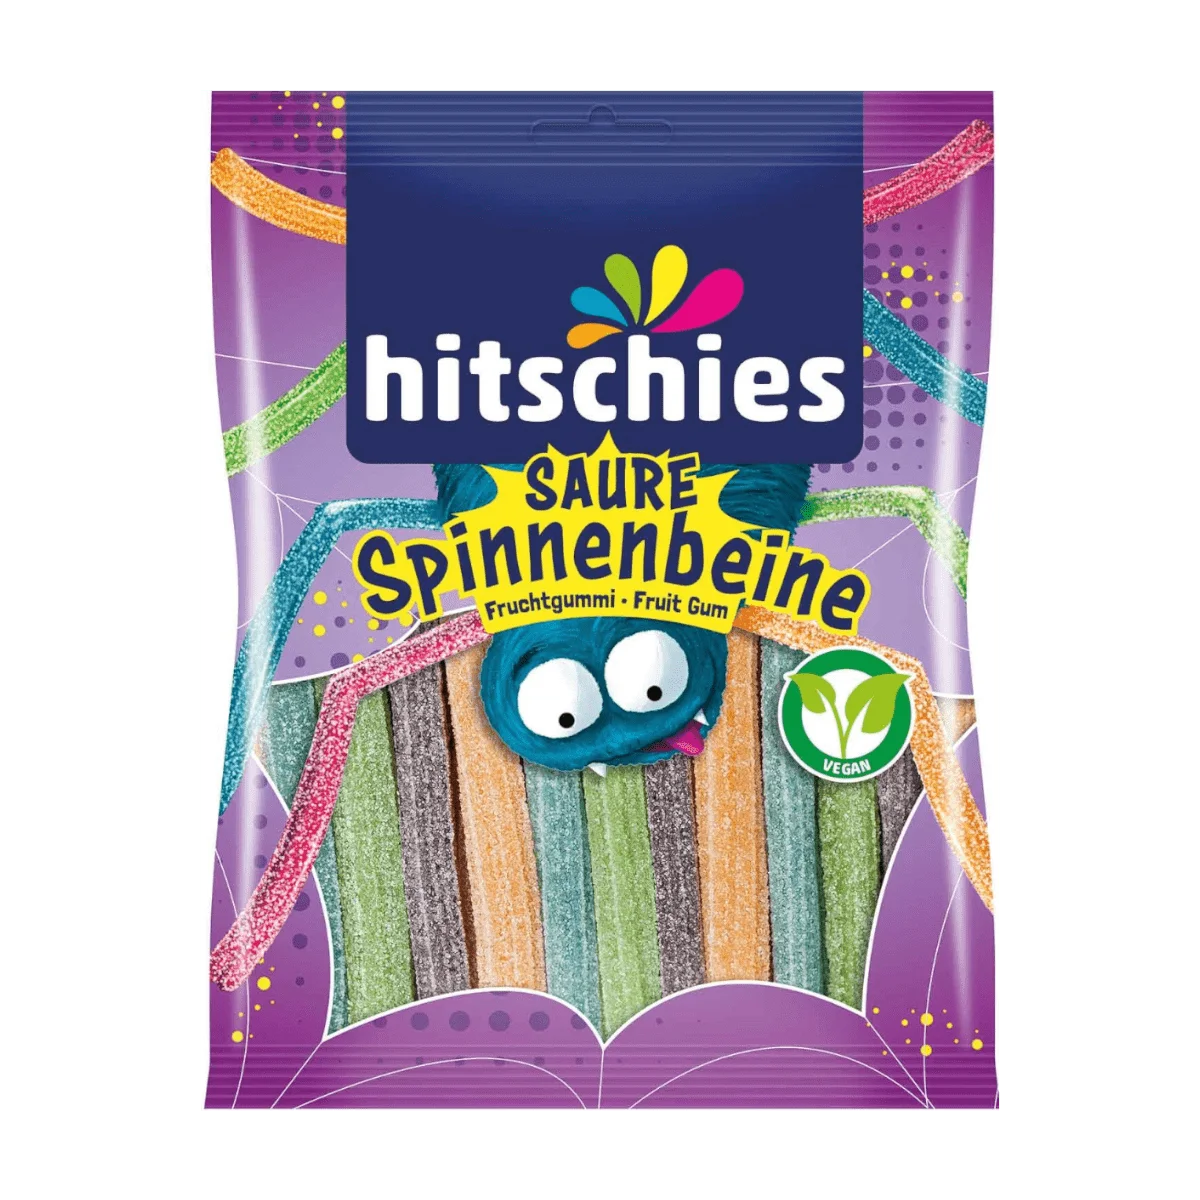 Hitschies Spinnenbeine Saure Fruchtgummi-Sticks, 125 g